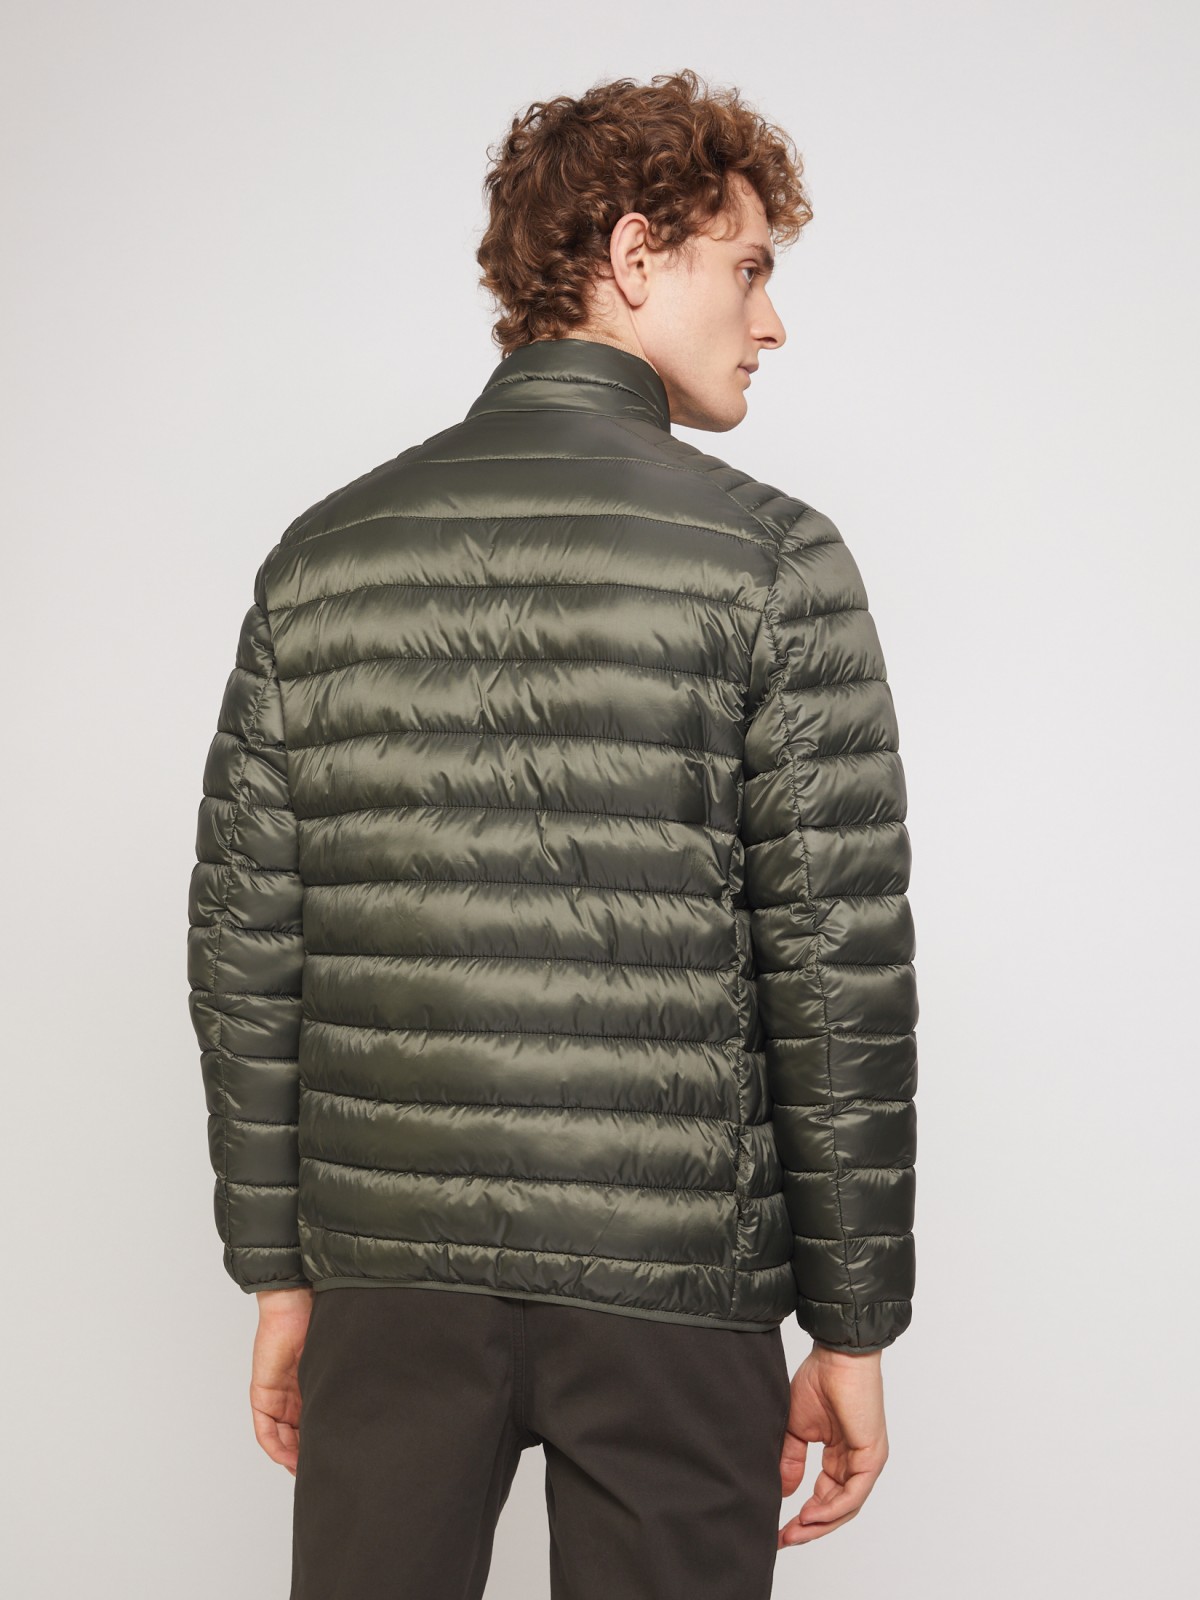 Ультралёгкая стёганая куртка с воротником-стойкой zolla 011335102214, цвет хаки, размер S - фото 6